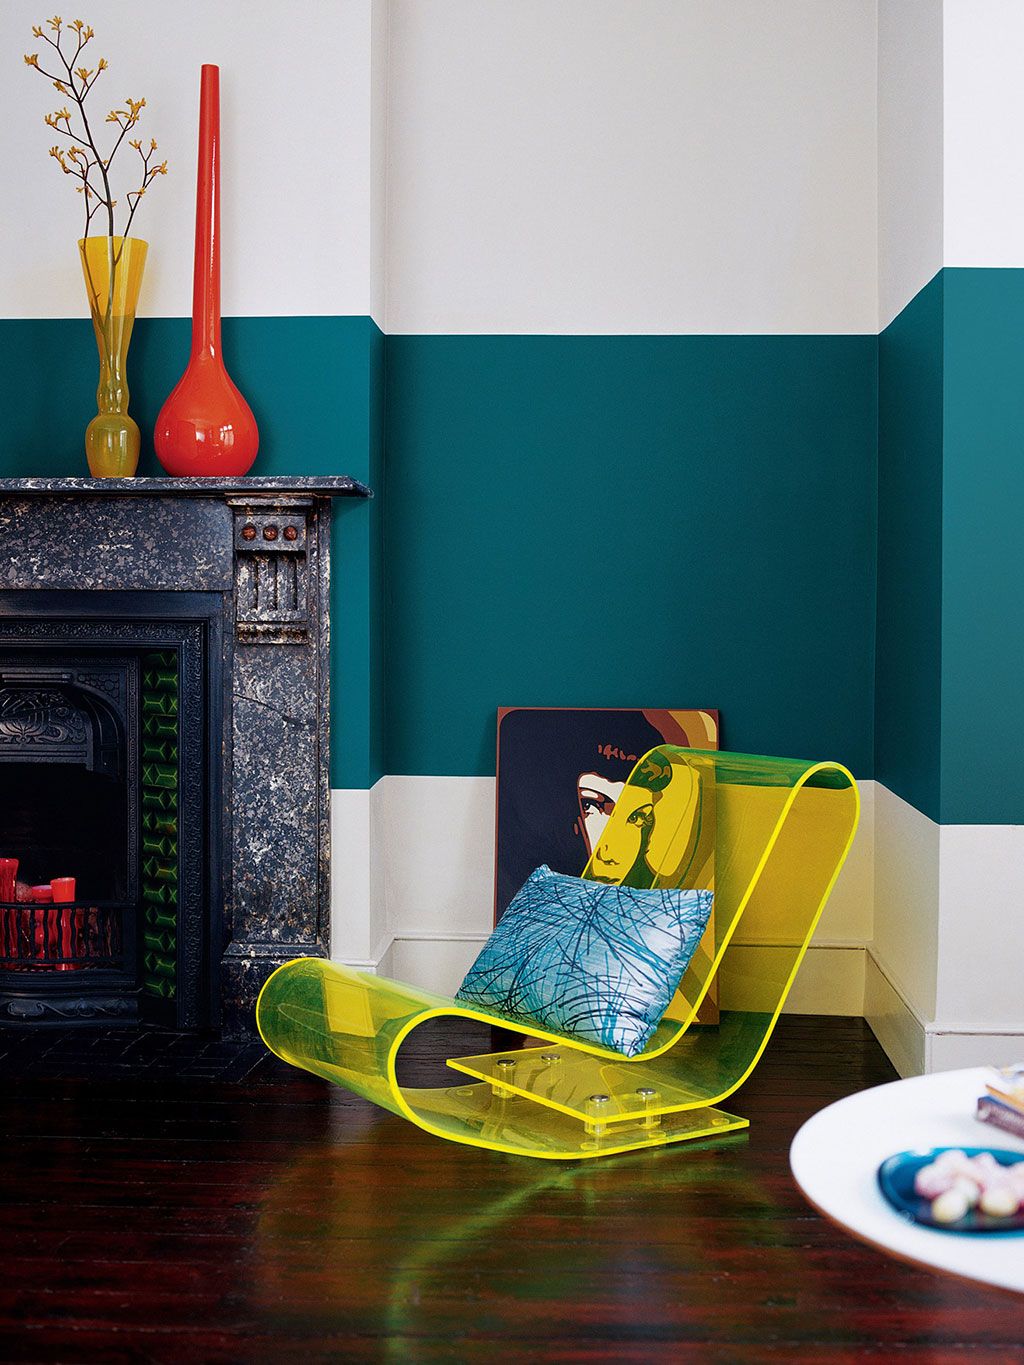 Aprenda a cómo elegir colores llamativos para pintar su vivienda